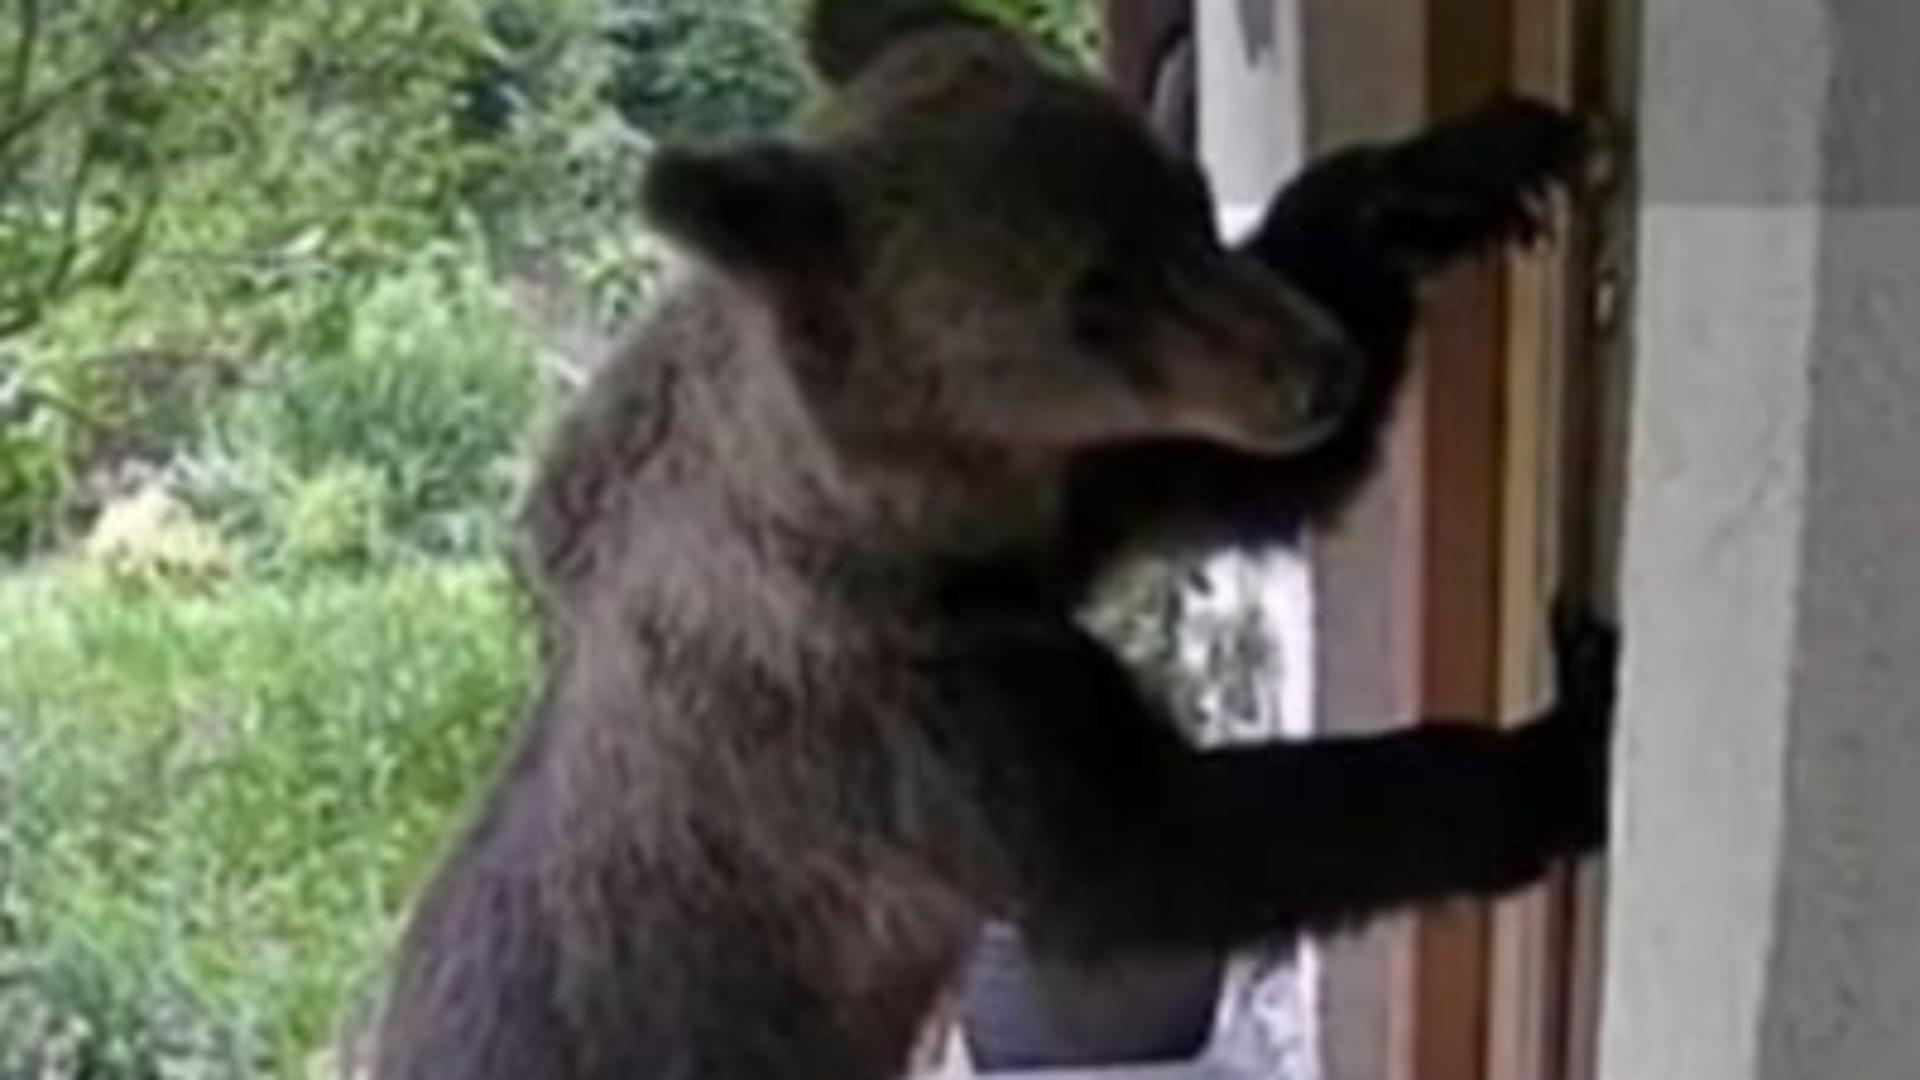 O familie din Brașov s-a trezit cu ursul în fața casei: “A încercat ușa” – FOTO